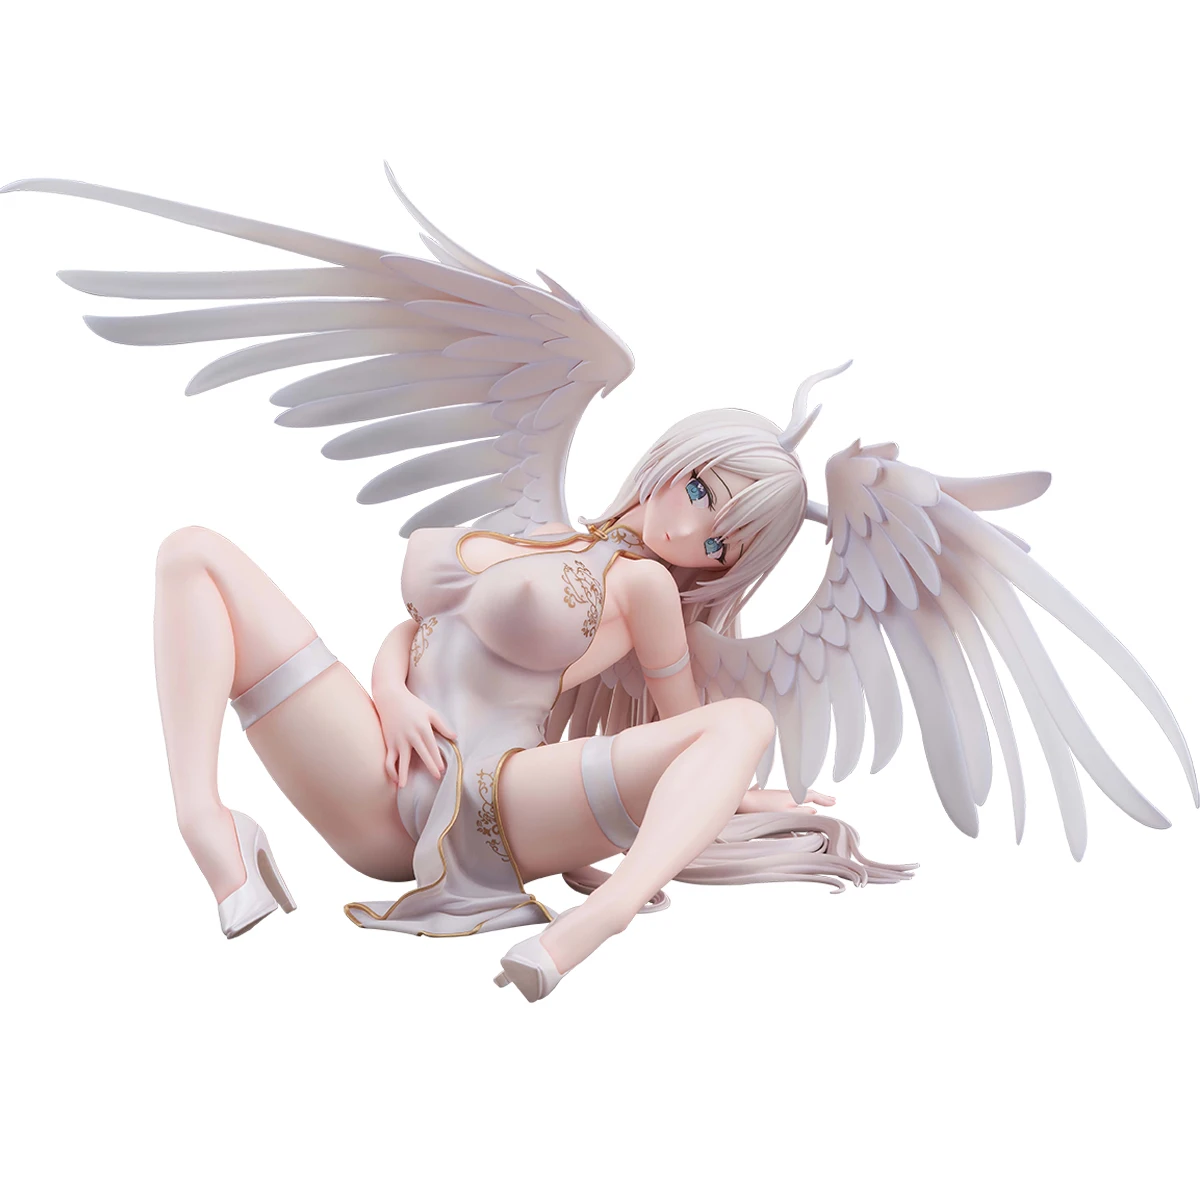 

Фигурка PartyLook, белый Ангел 1/4, аниме девушка, ПВХ экшн-фигурка, игрушка, родная статуя, Skytube, взрослая Коллекционная модель, кукла в подарок